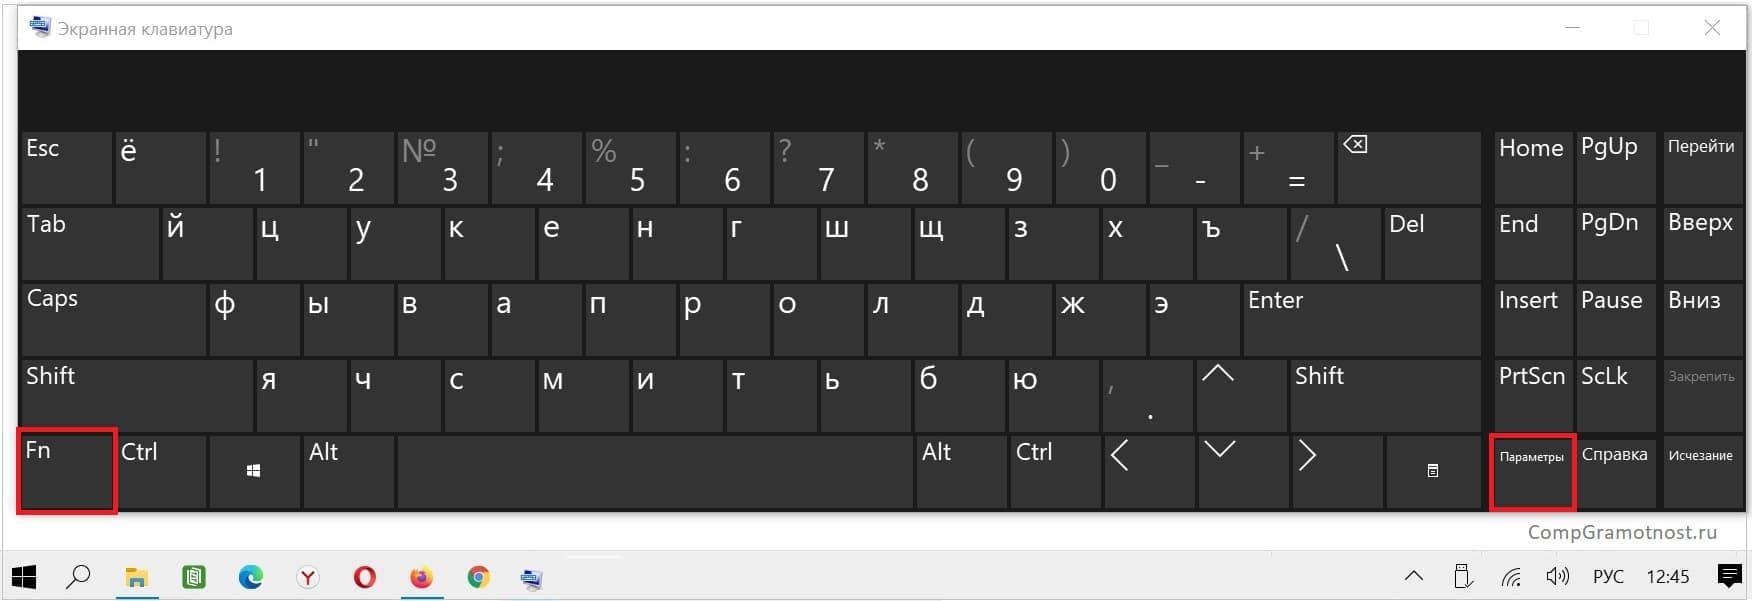 Внешний вид экранной клавиатуры Windows 10